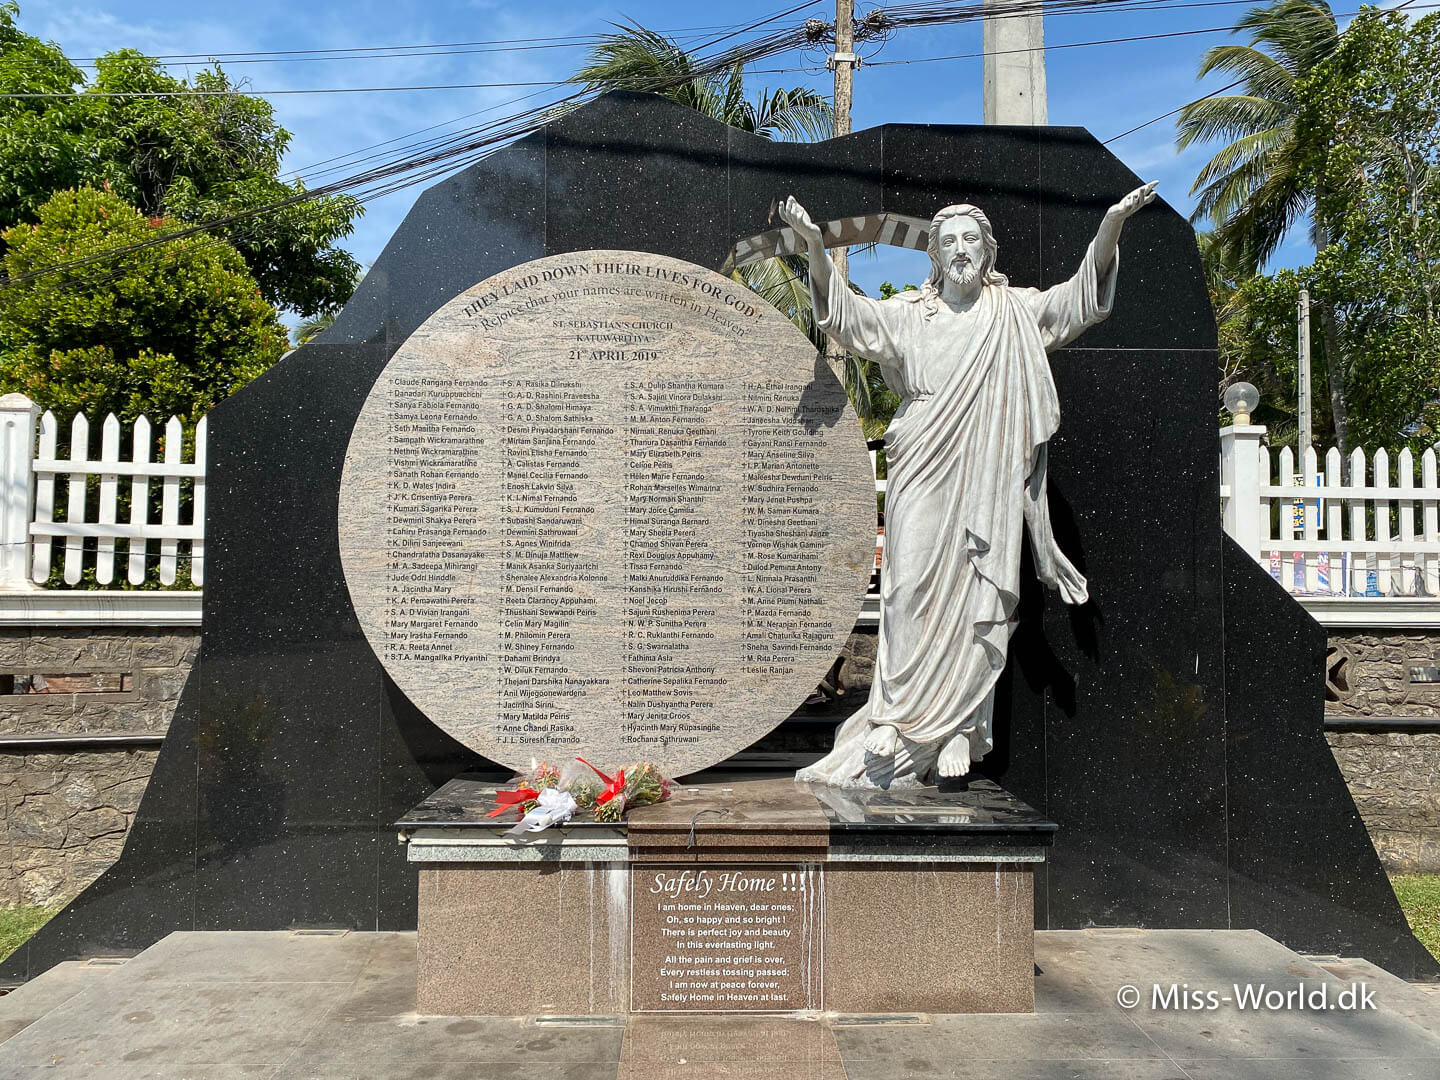 Negombo mindetavle efter terrorangreb. Med navne på et stort antal døde fra bombningen af kirken i Negombo Sri Lanka